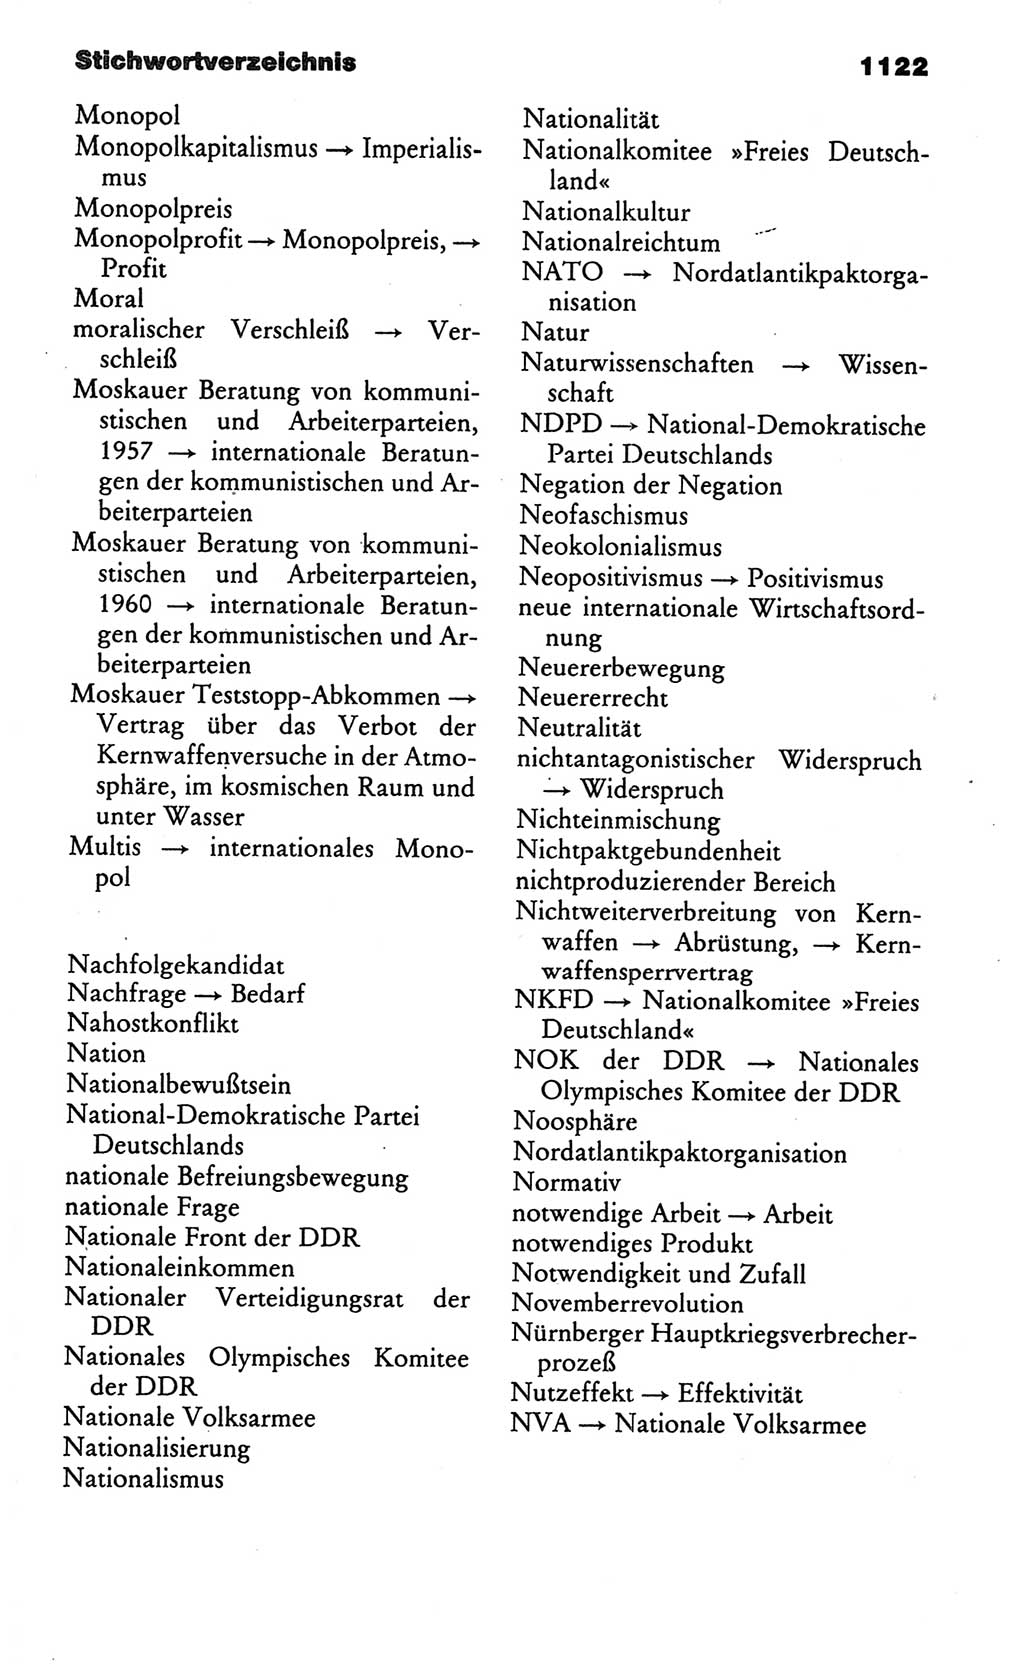 Kleines politisches Wörterbuch [Deutsche Demokratische Republik (DDR)] 1986, Seite 1122 (Kl. pol. Wb. DDR 1986, S. 1122)